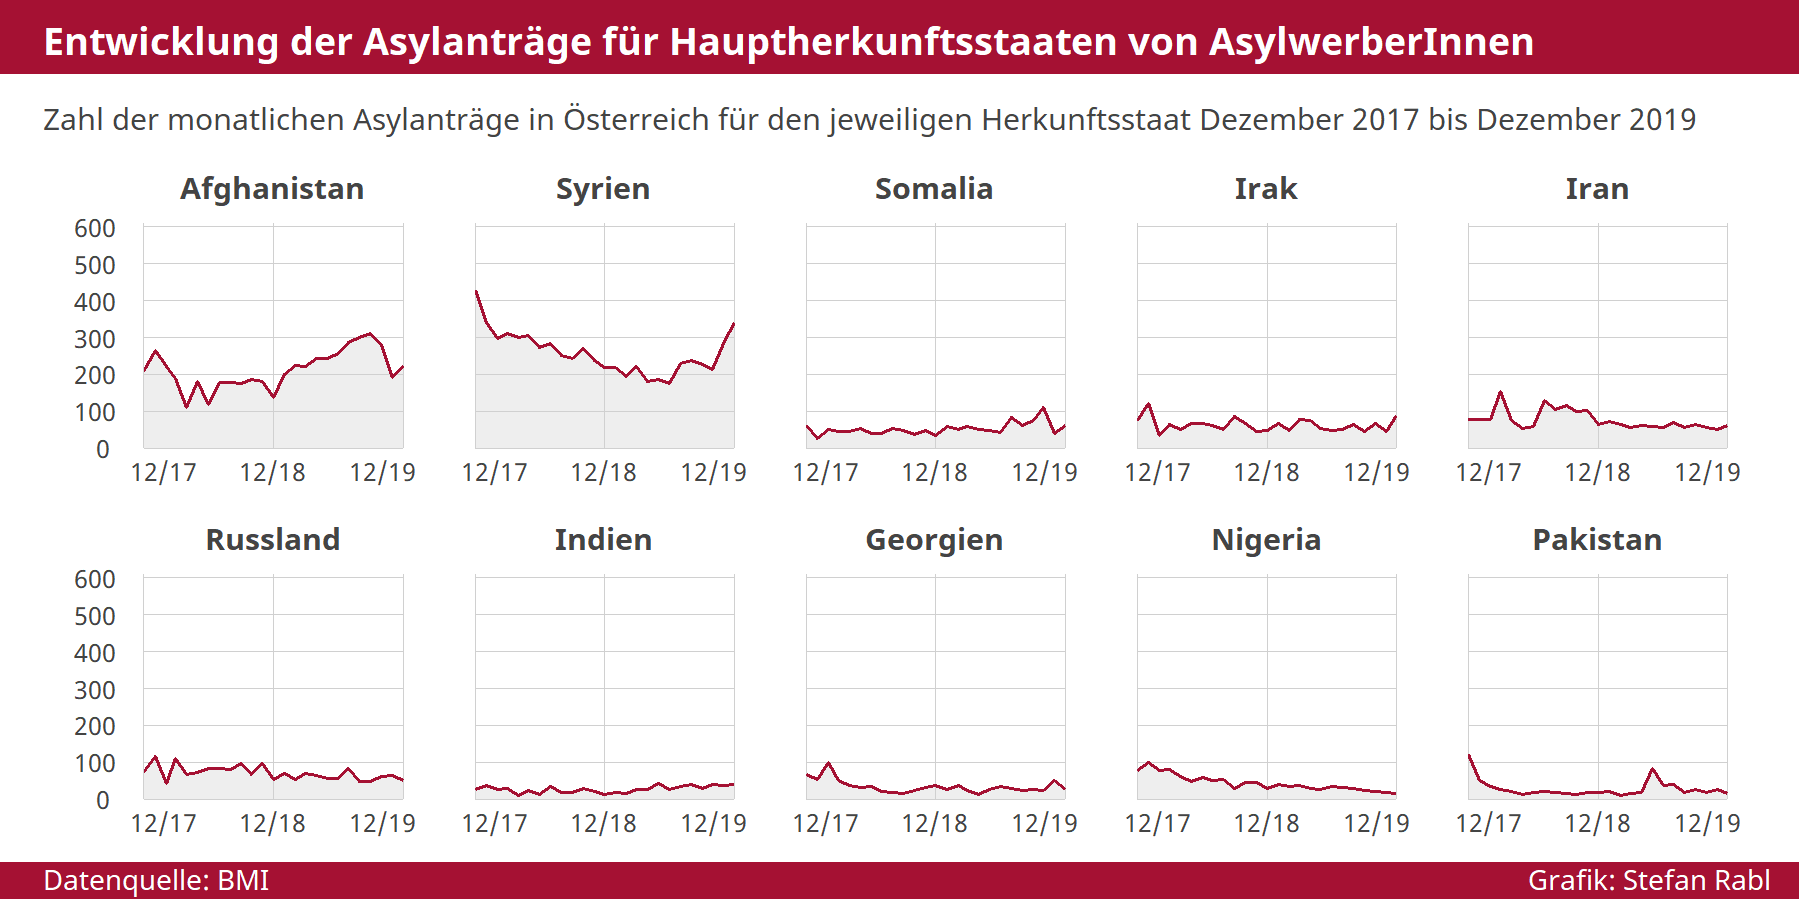 Grafik: Vergleich Herkunftsstaaten von AsylwerberInnen 2017-2018